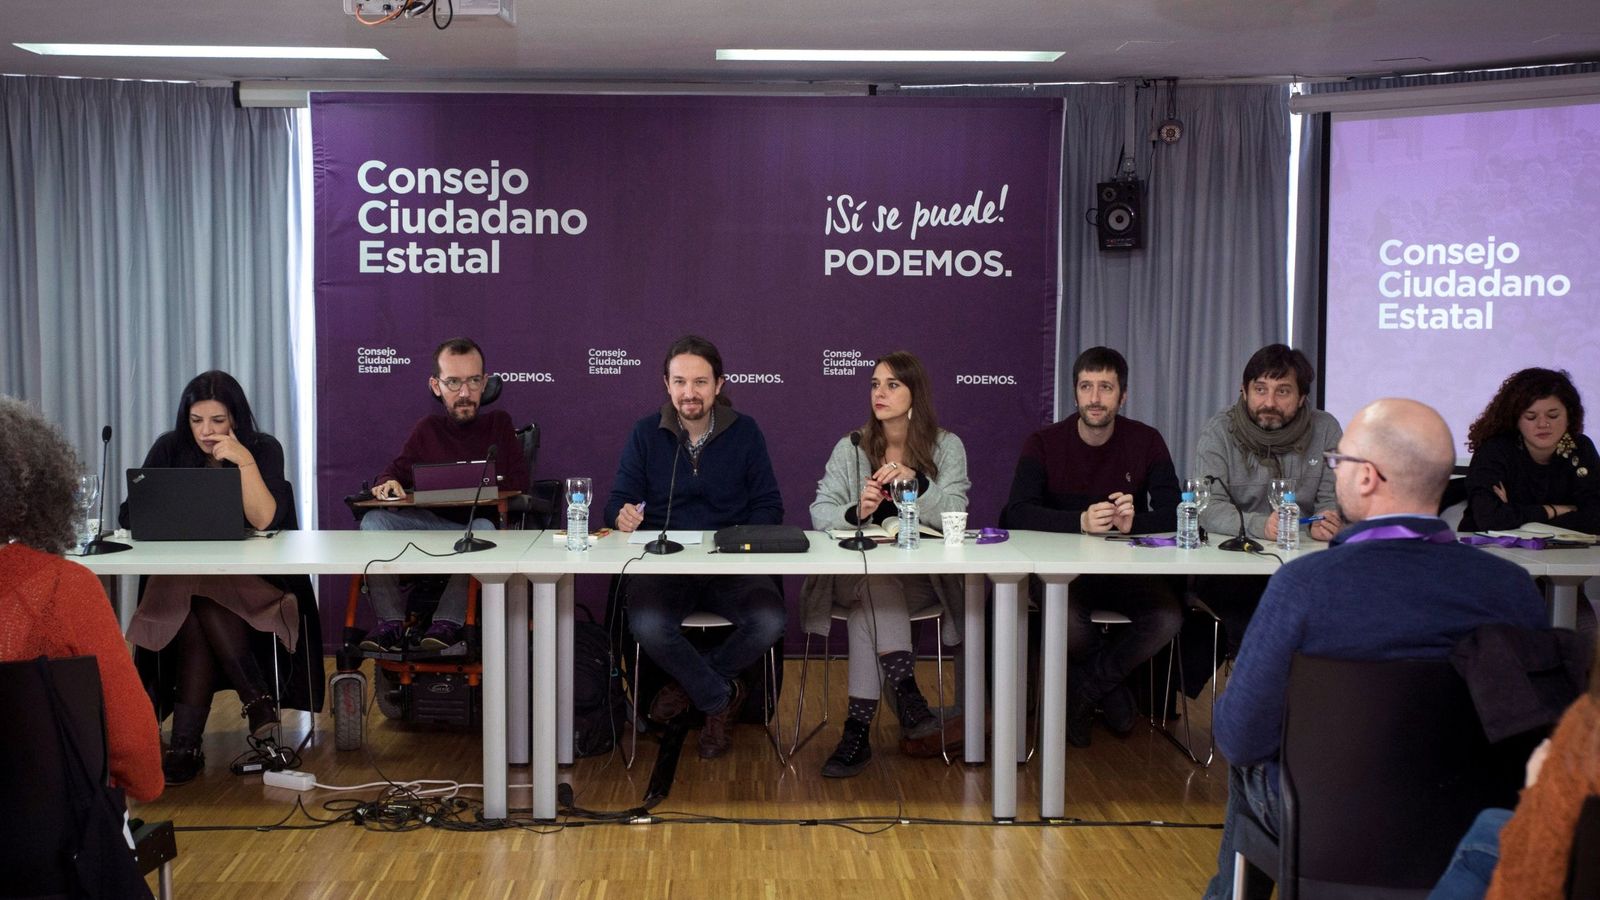 Foto: Pablo Iglesias preside el último consejo ciudadano estatal del partido, celebrado el pasado mes de noviembre. (EFE)